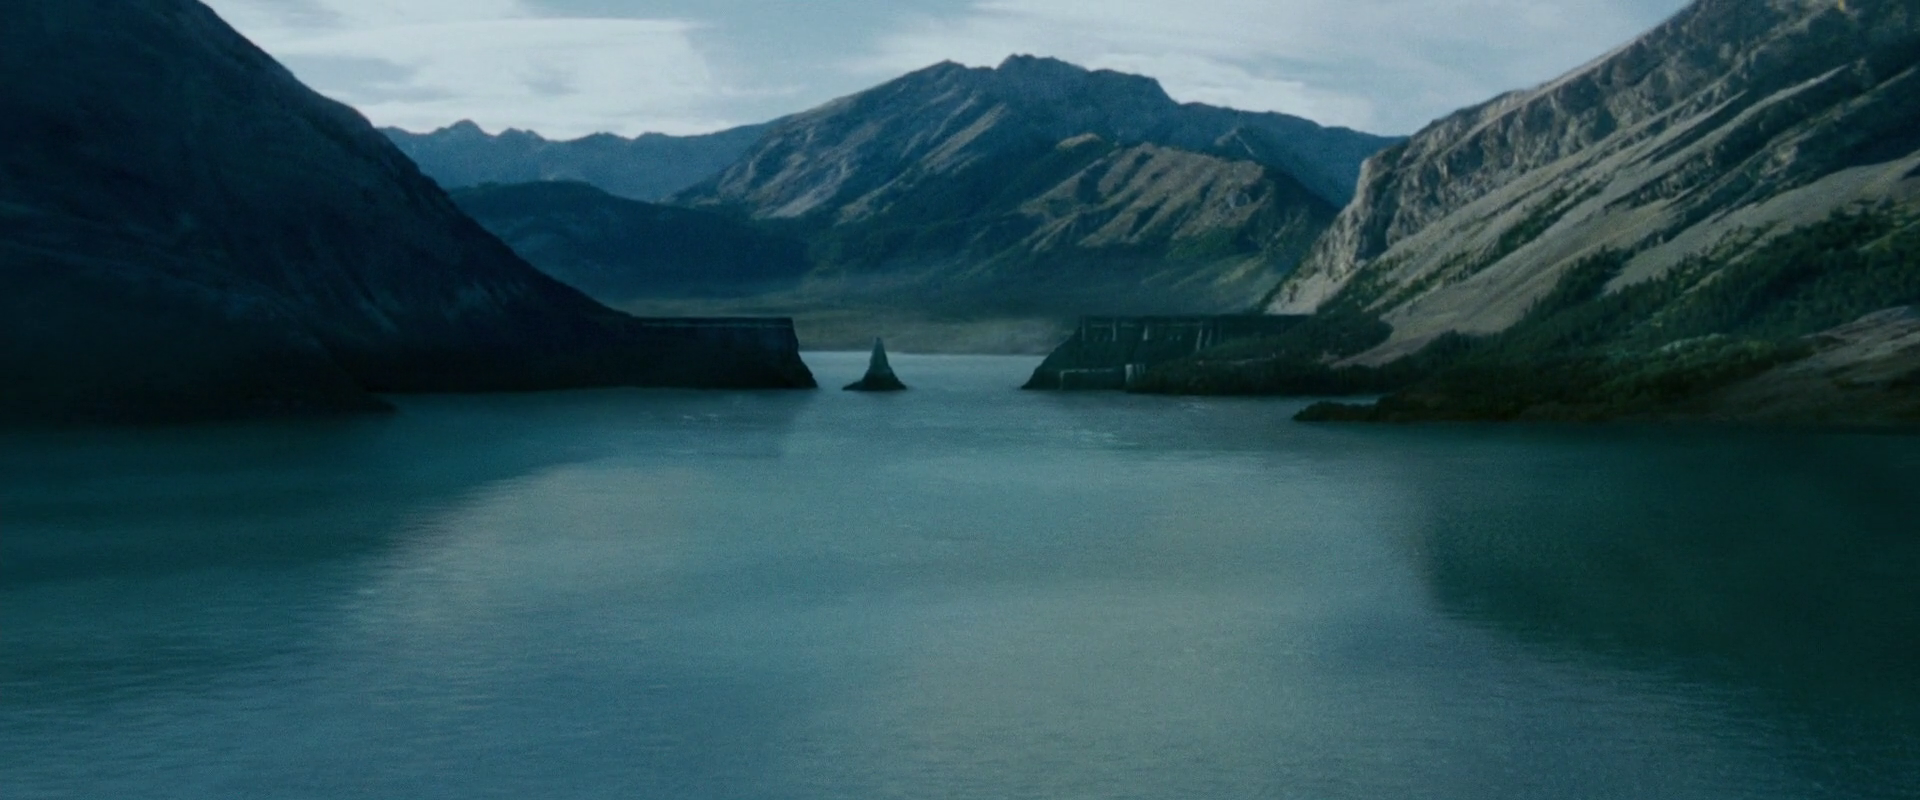 Alkali Lake | X-Men Movies Wiki | Fandom